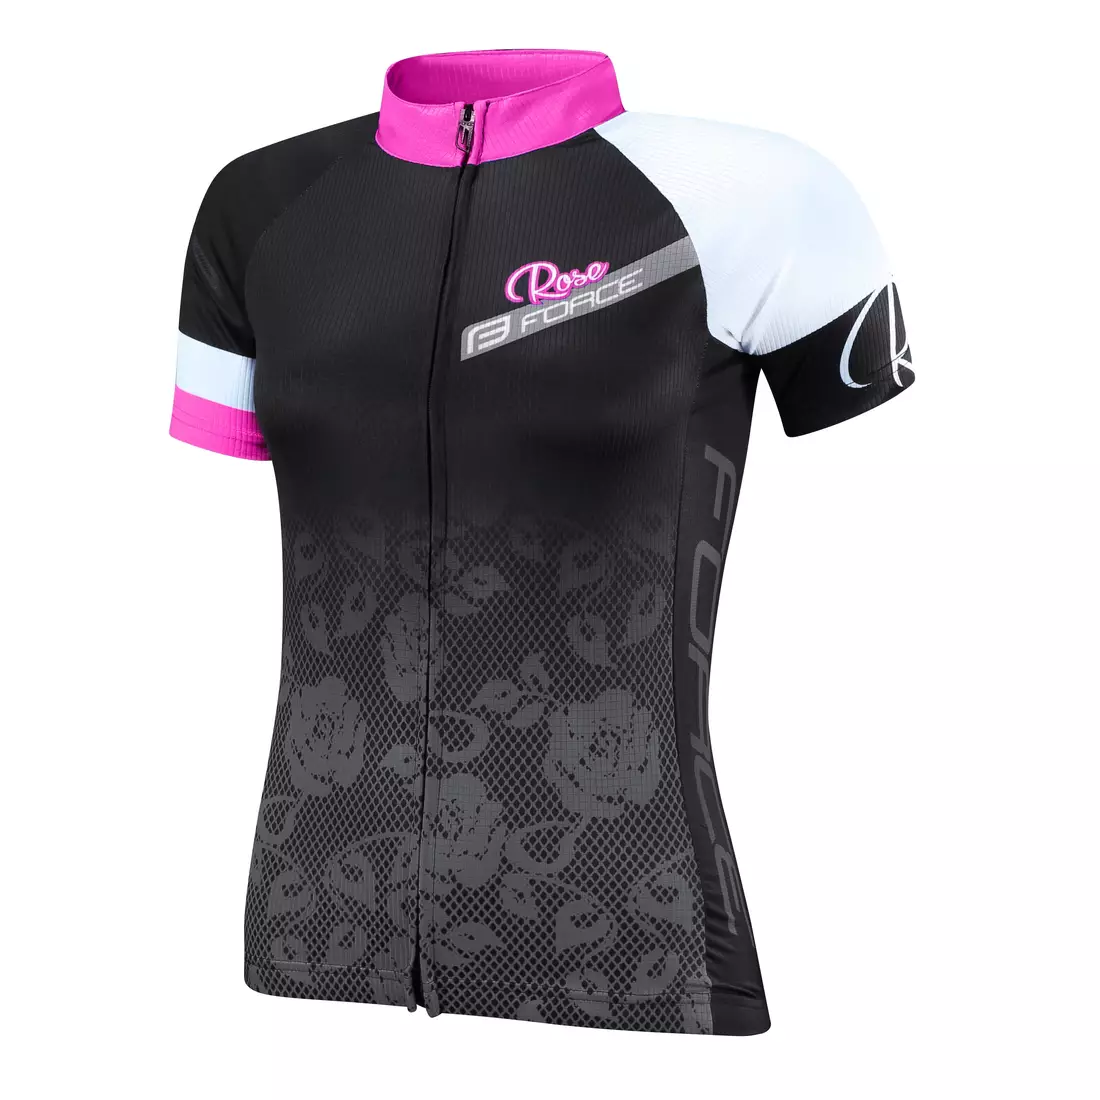 FORCE ROSE dámský cyklistický dres 9001342 černo-růžový